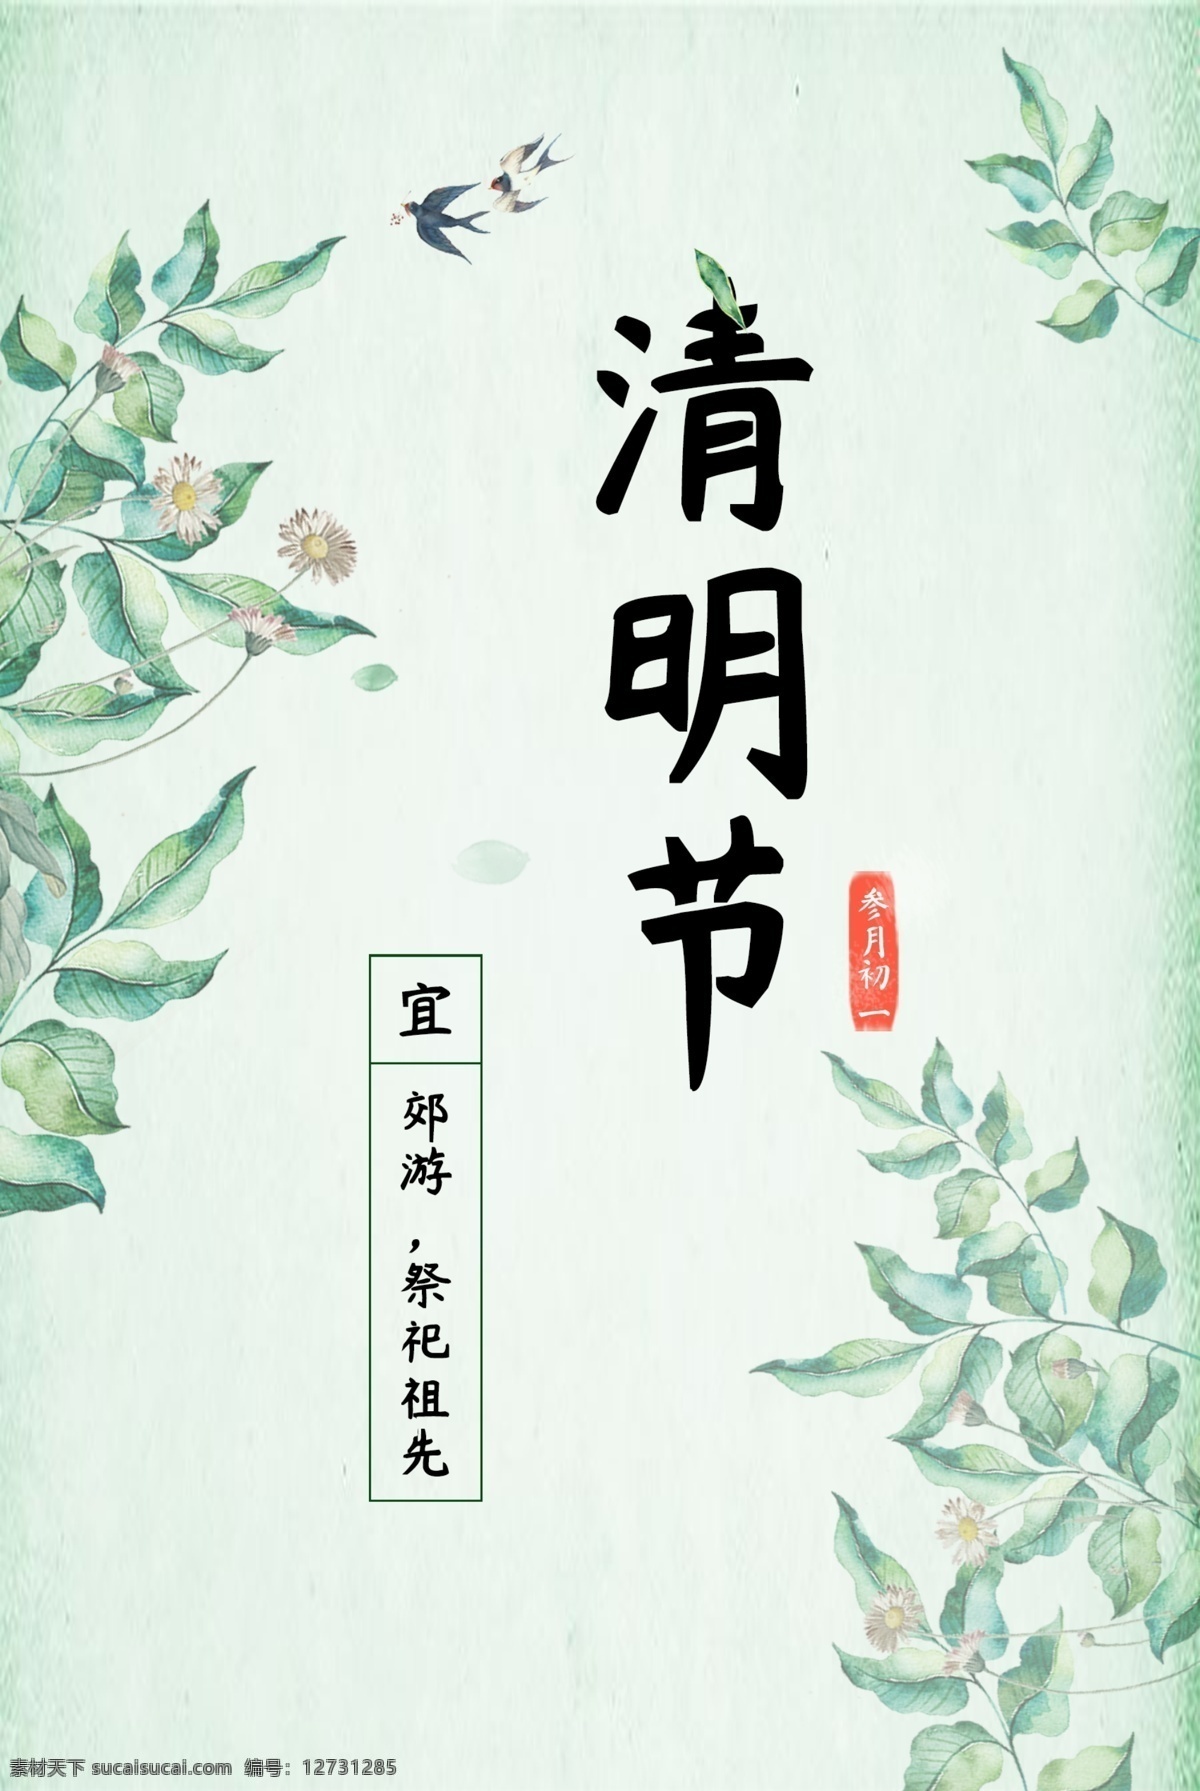 中国 节日 清明节 海报 中国节日 祭祀祖先